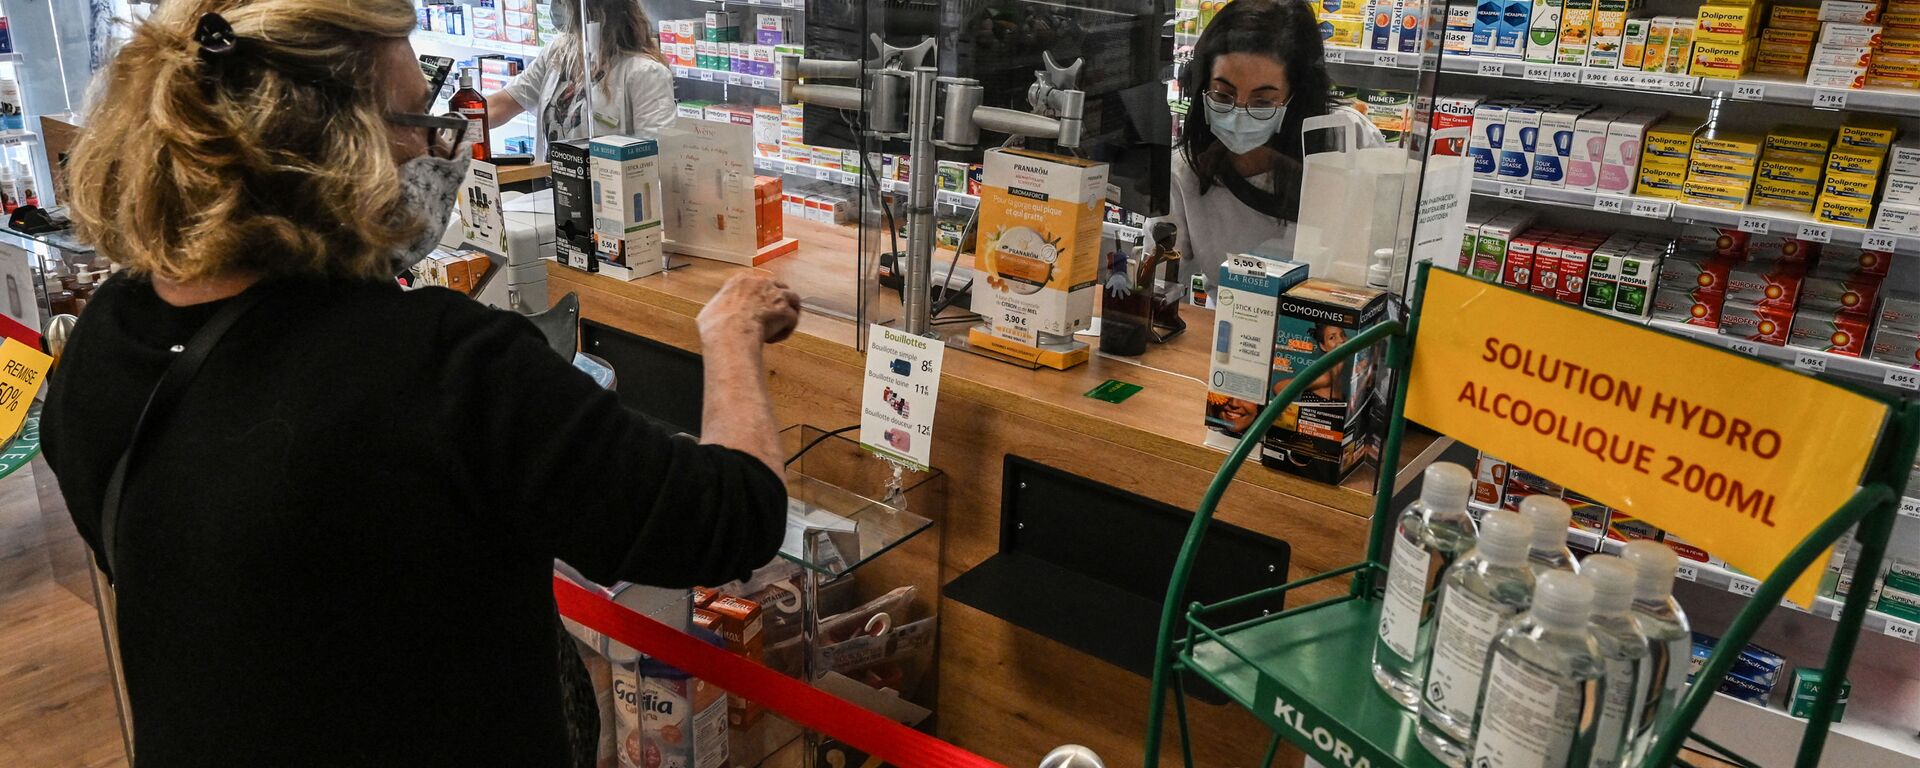 Женщина покупает лекарства в аптеке в Пероле, южная Франция - Sputnik Азербайджан, 1920, 17.09.2021